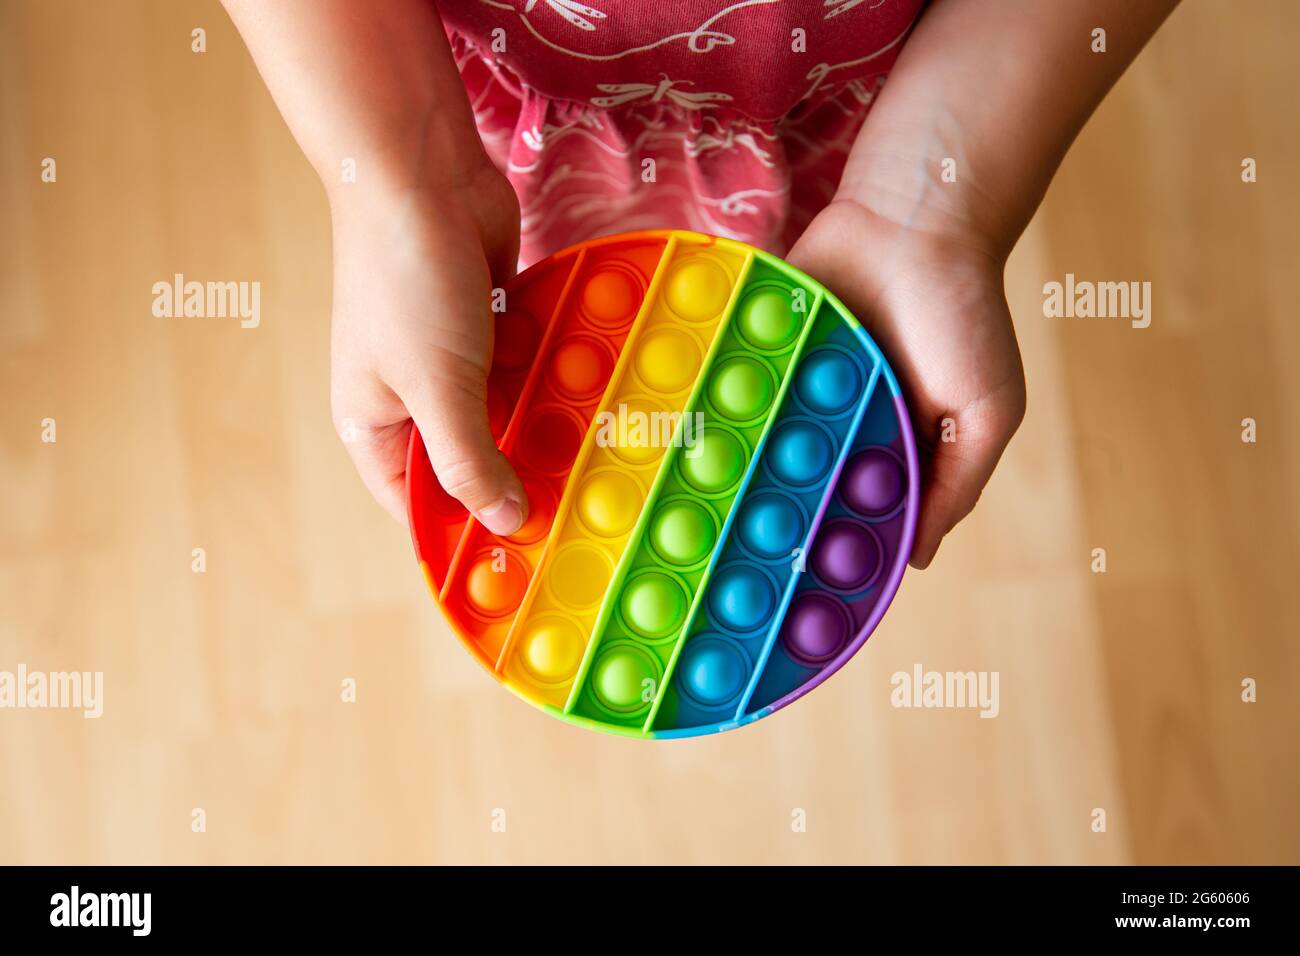 Gros plan sur le jeu d'enfant avec le jouet de violon sensoriel Push pop Bubble de couleur arc-en-ciel. Banque D'Images